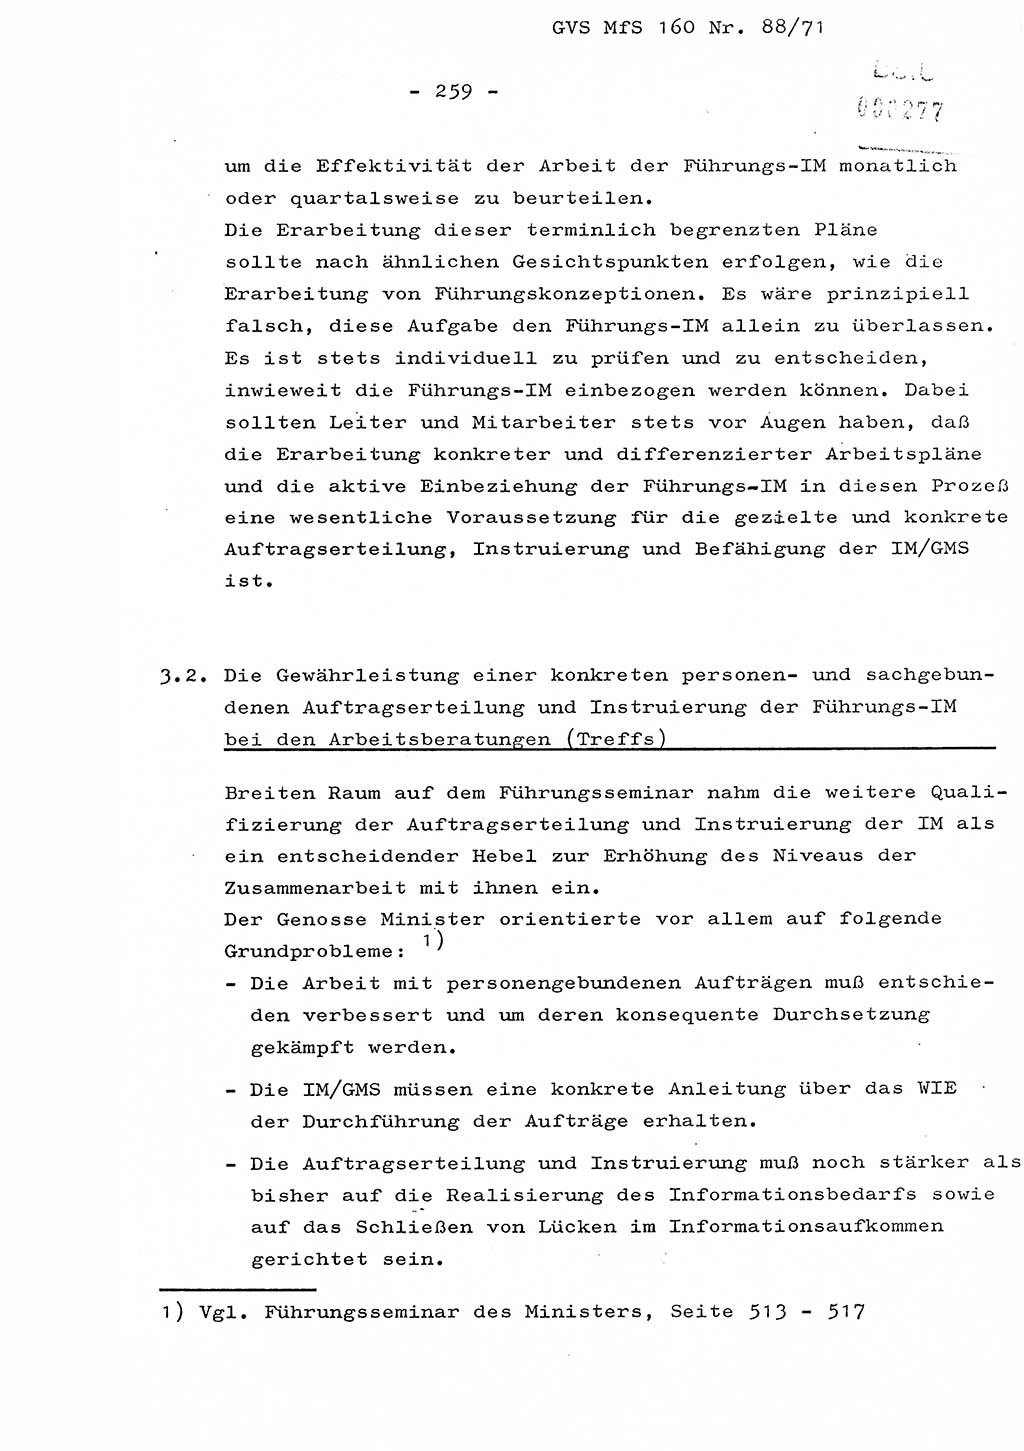 Dissertation Oberstleutnant Josef Schwarz (BV Schwerin), Major Fritz Amm (JHS), Hauptmann Peter Gräßler (JHS), Ministerium für Staatssicherheit (MfS) [Deutsche Demokratische Republik (DDR)], Juristische Hochschule (JHS), Geheime Verschlußsache (GVS) 160-88/71, Potsdam 1972, Seite 259 (Diss. MfS DDR JHS GVS 160-88/71 1972, S. 259)